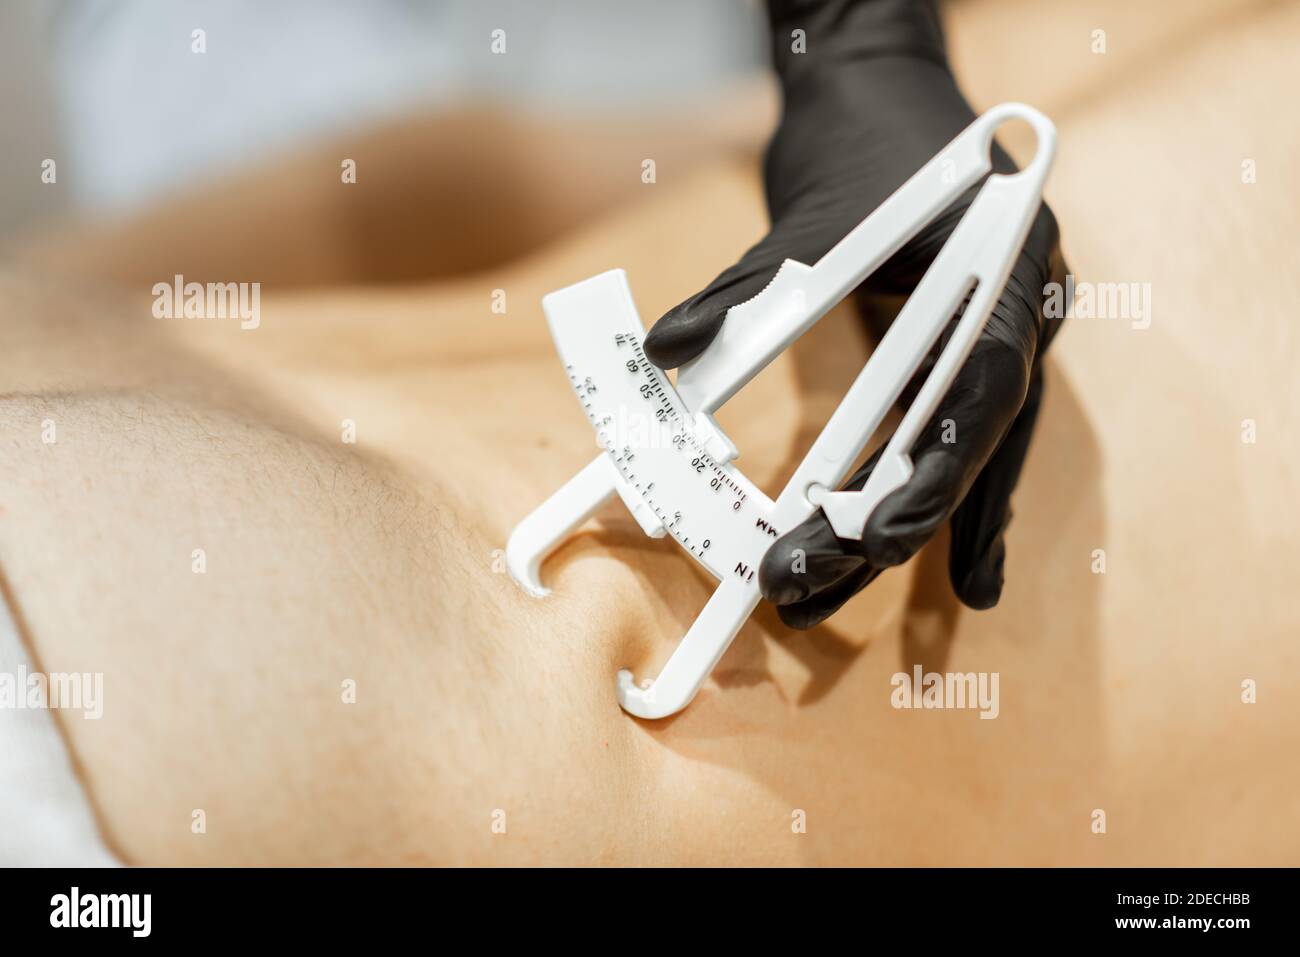 Bestimmung der Menge an Talg auf männlichen Bauch mit medizinischen Caliper, Nahaufnahme Stockfoto